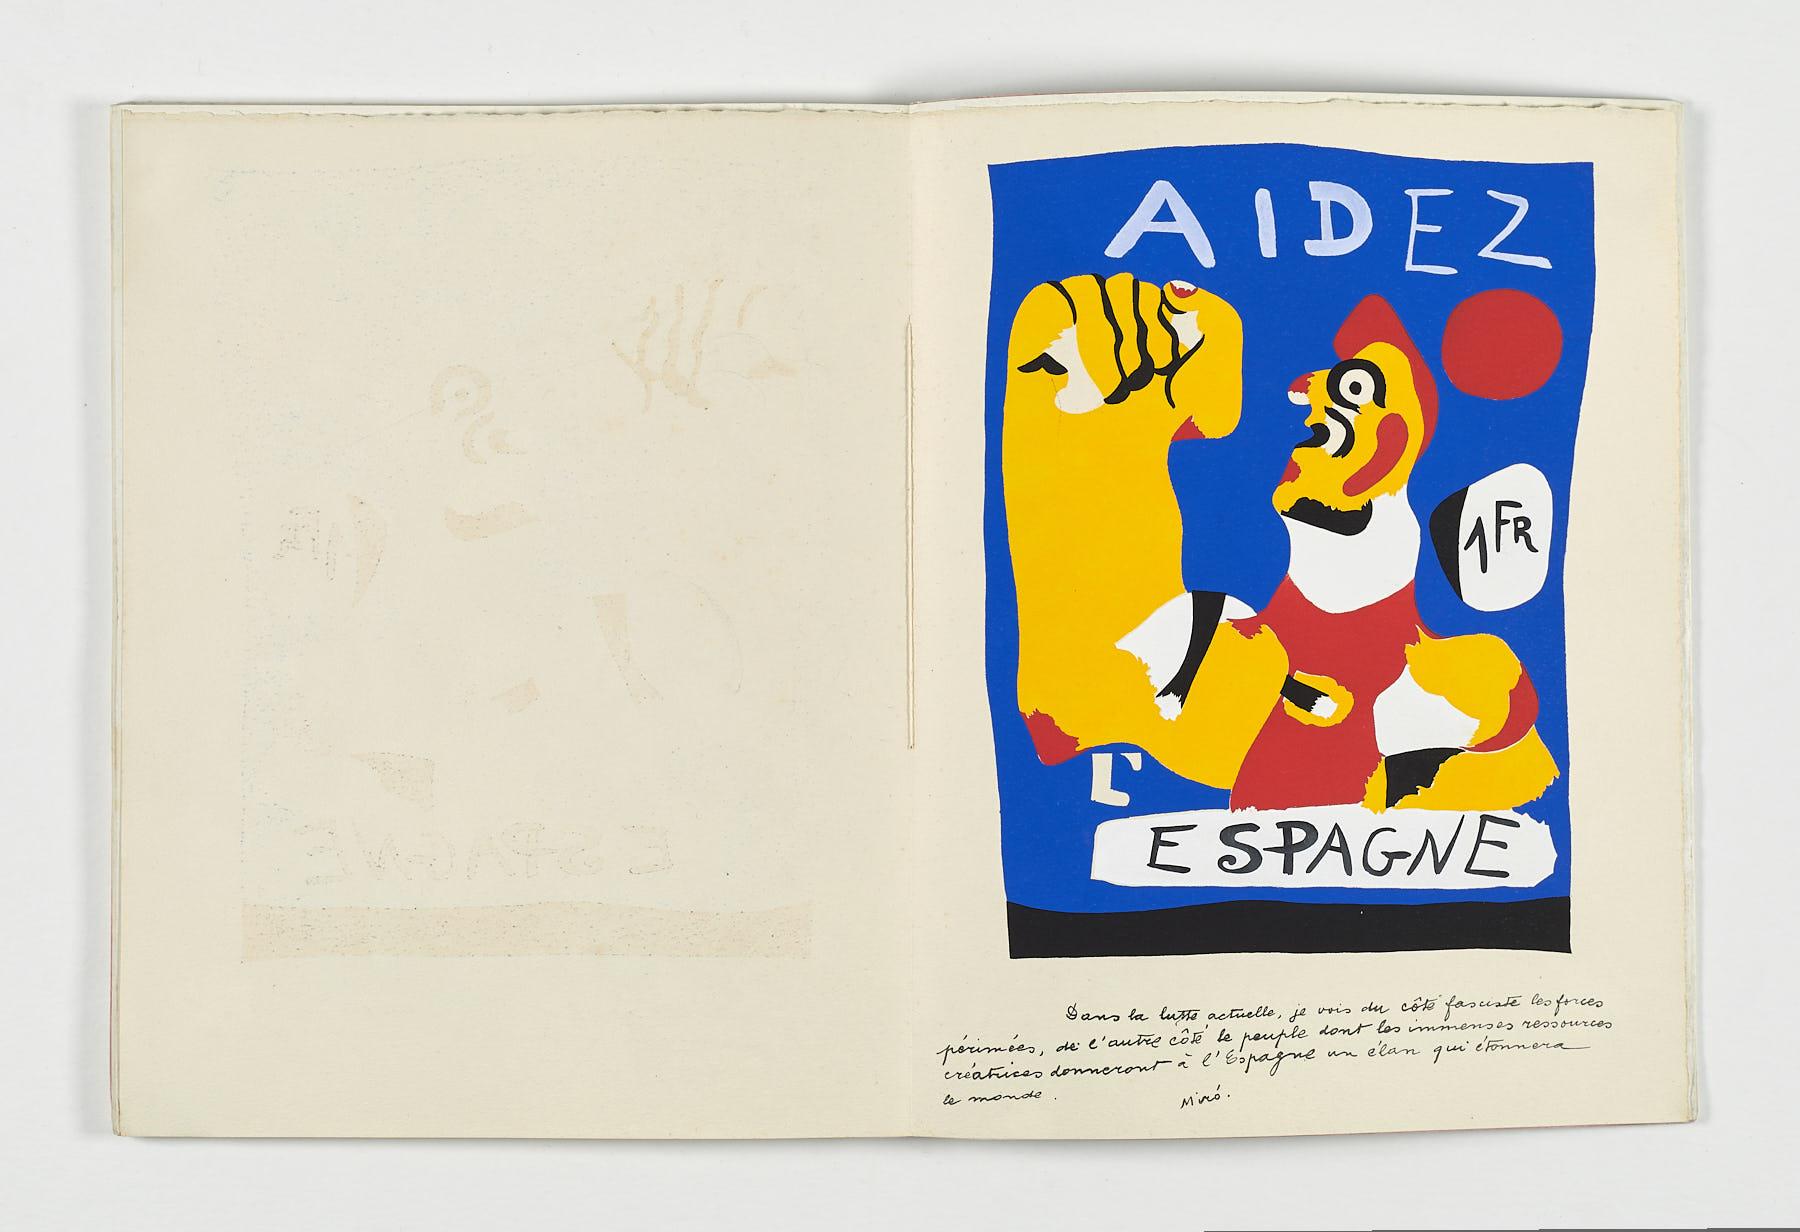 Spanisch Künstler signiert limitierte Auflage original Kunstdruck pochoir n53 – Print von Joan Miró